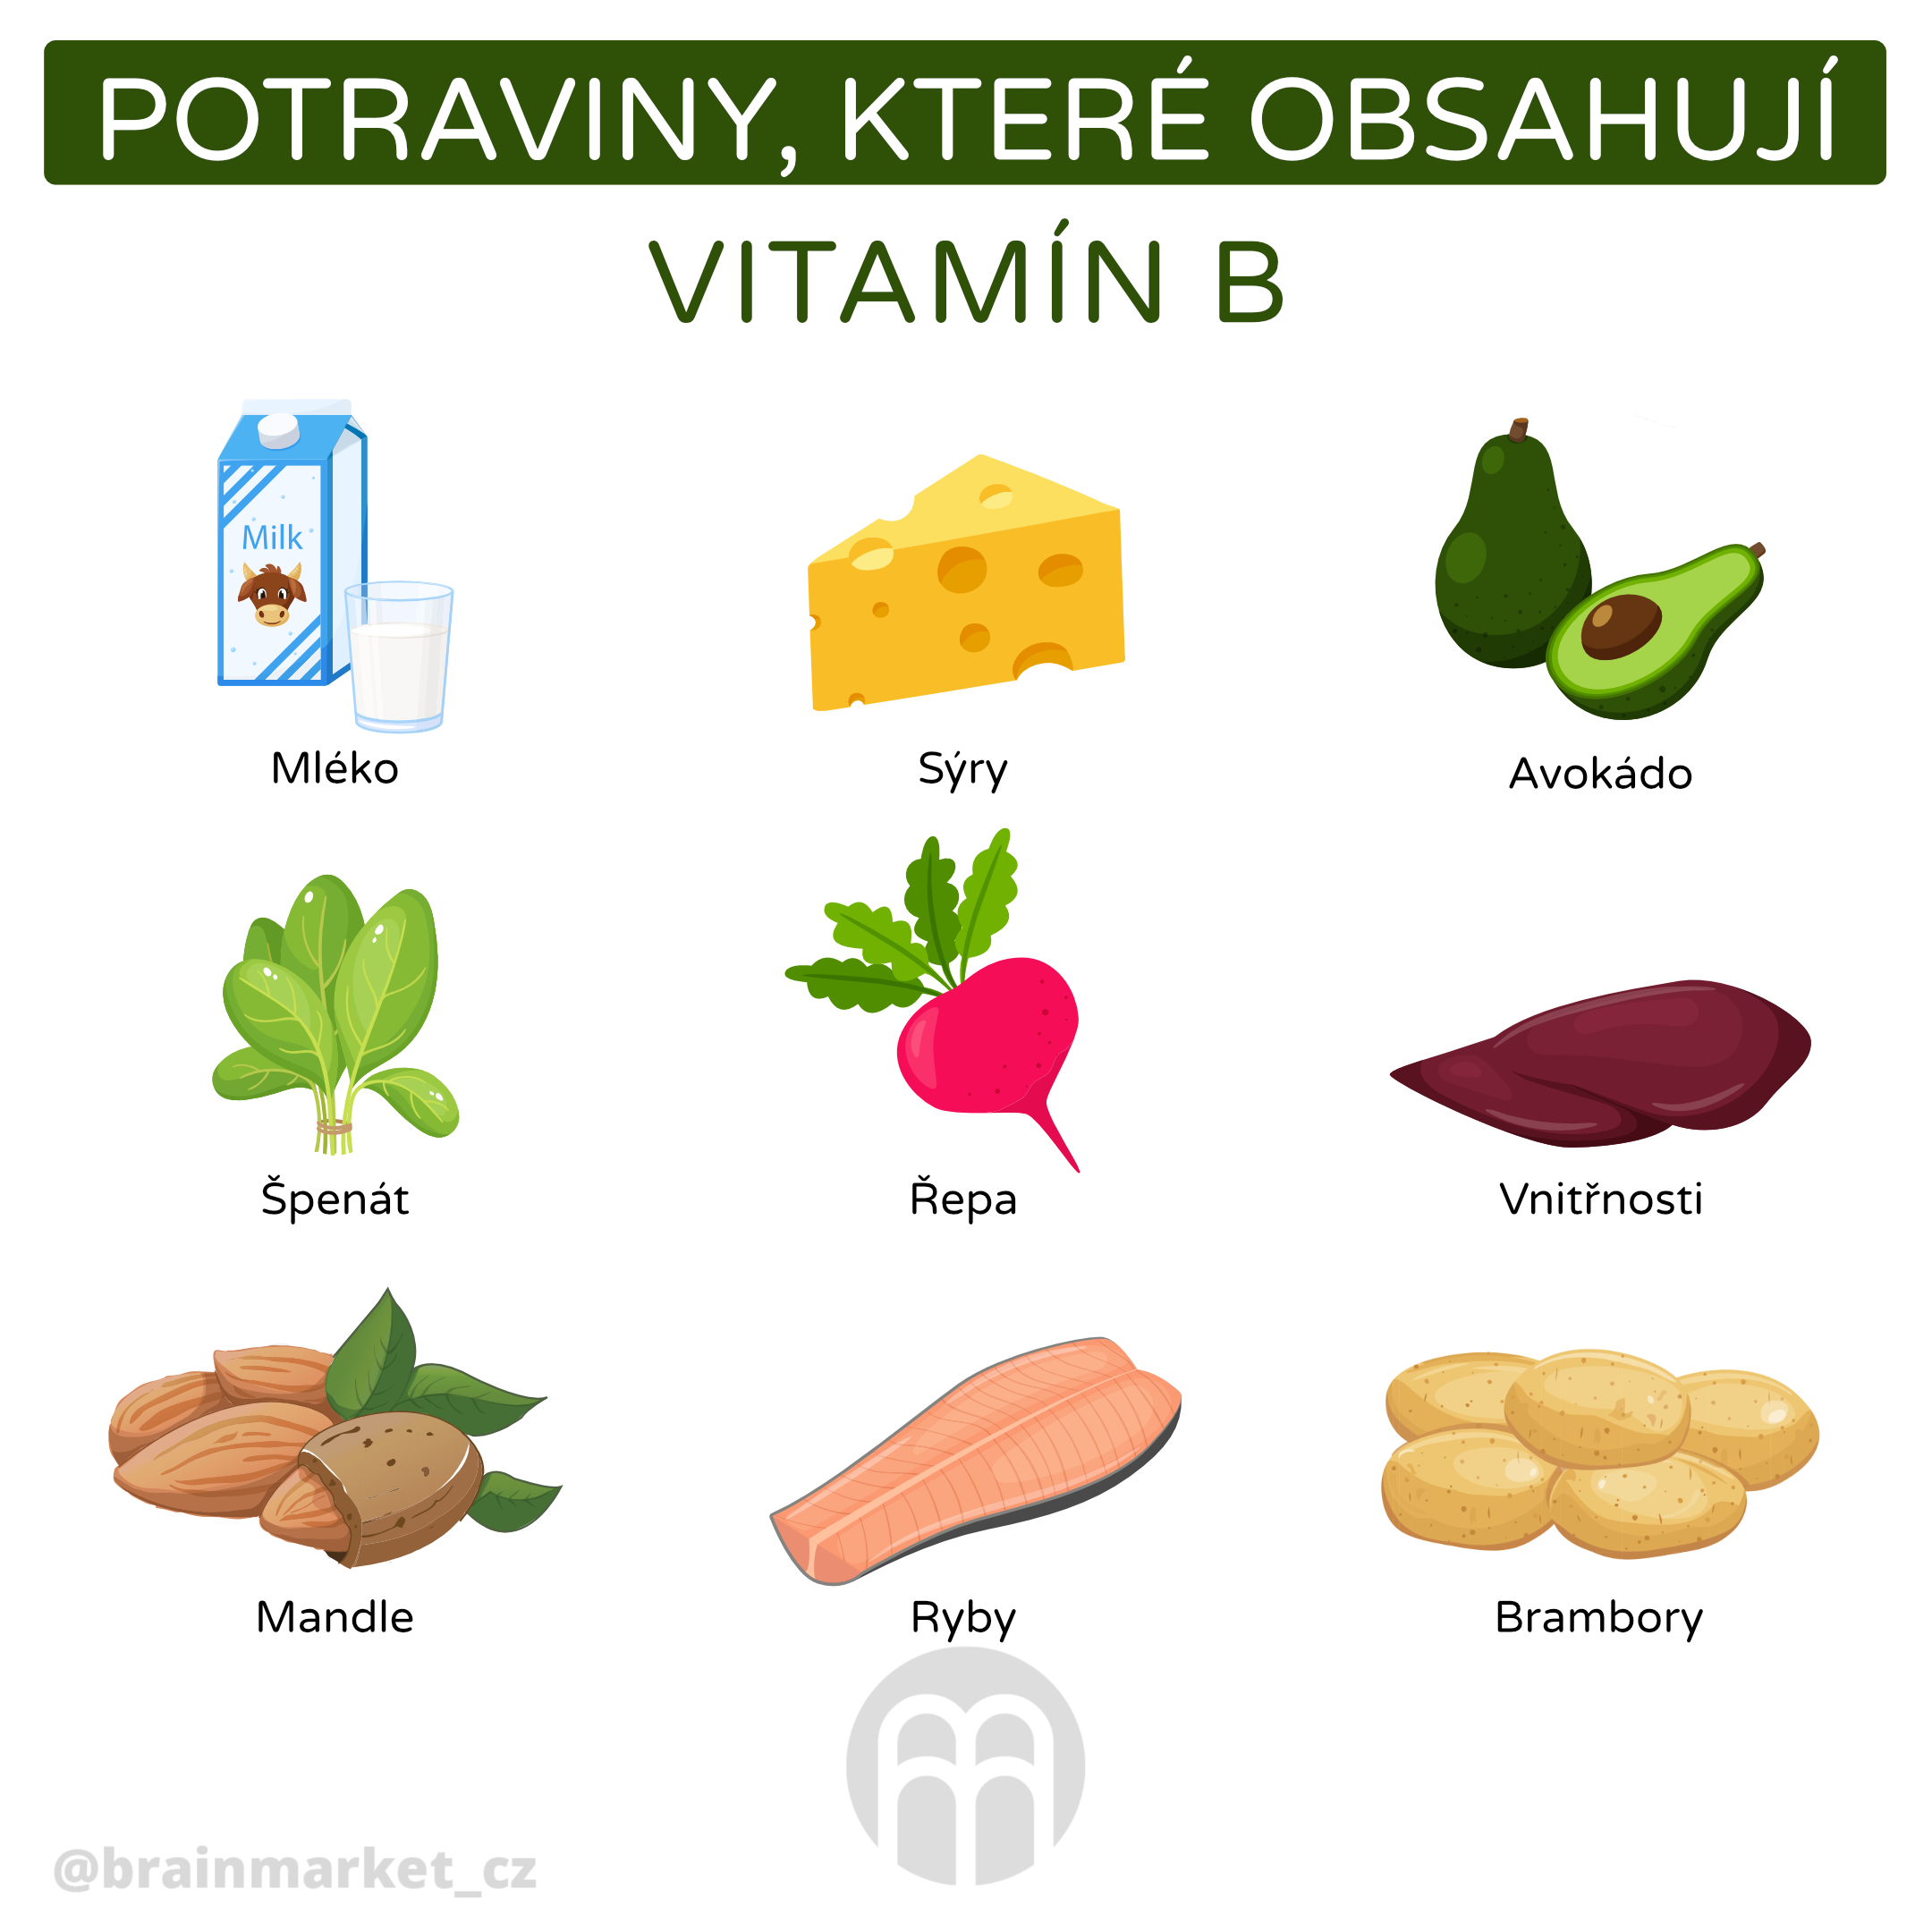 Jak poznám že mi chybí vitamín B?